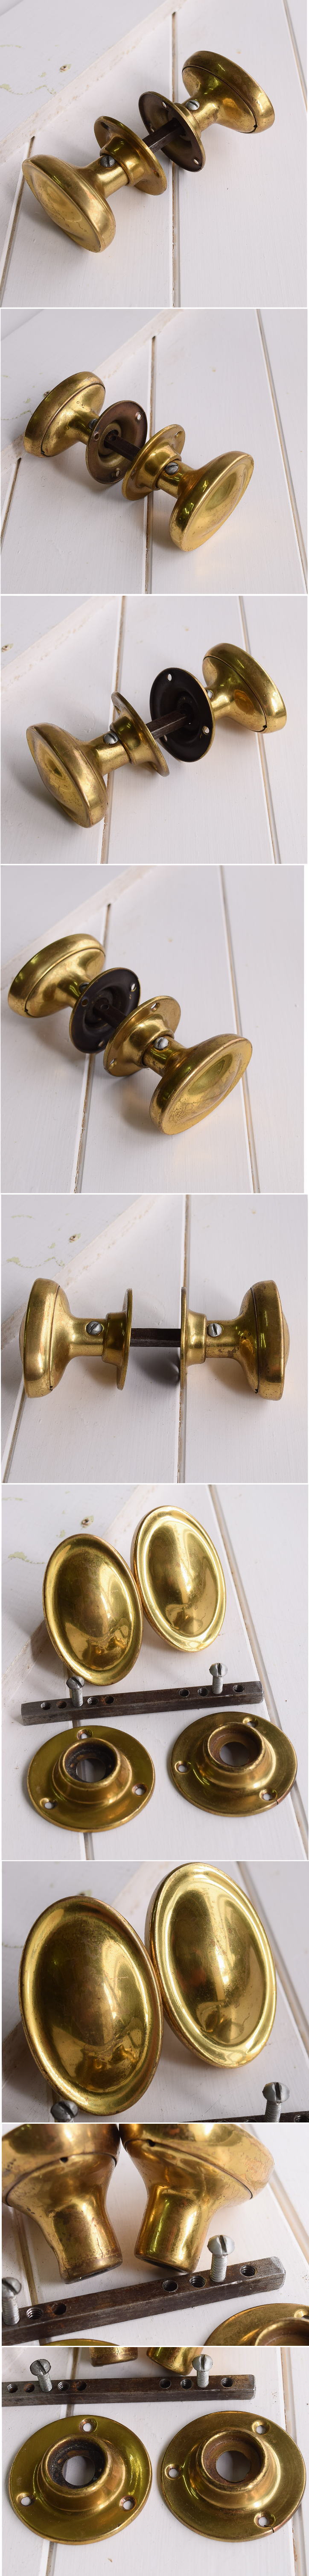 イギリス アンティーク 真鍮製 ドアノブ 建具金物 握り玉 11157